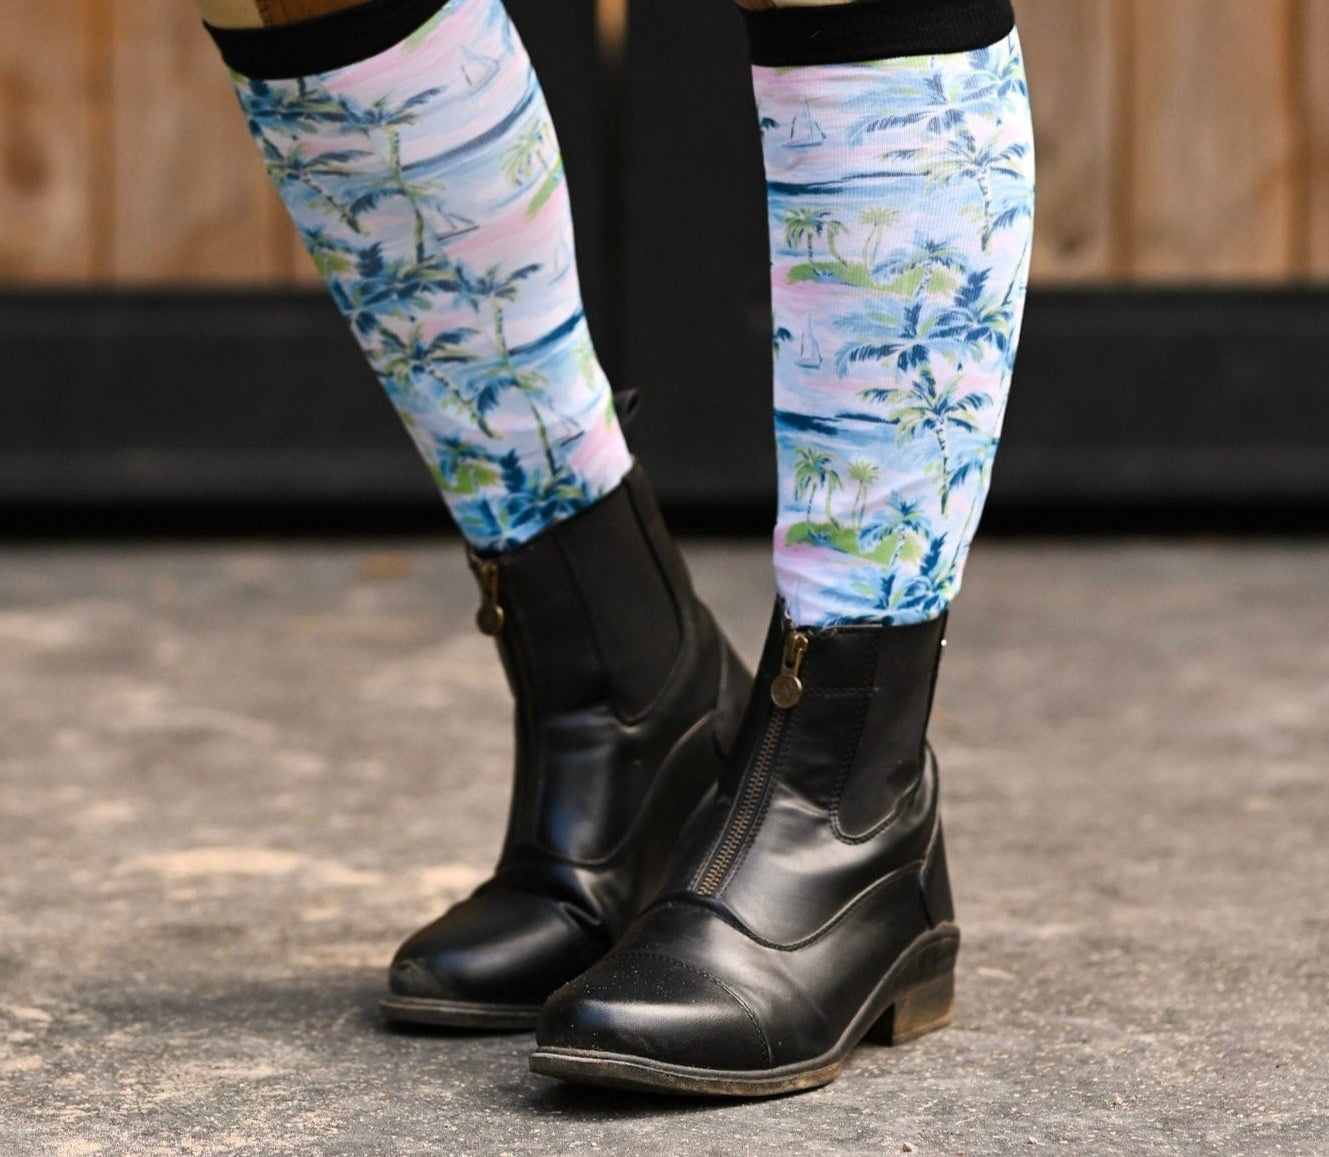 D&S LIMITED EDITION Limited Edition Limited Sail Away Socks equestrian boot socks boot socks thin socks riding socks pattern socks tall socks funny socks knee high socks horse socks horse show socks